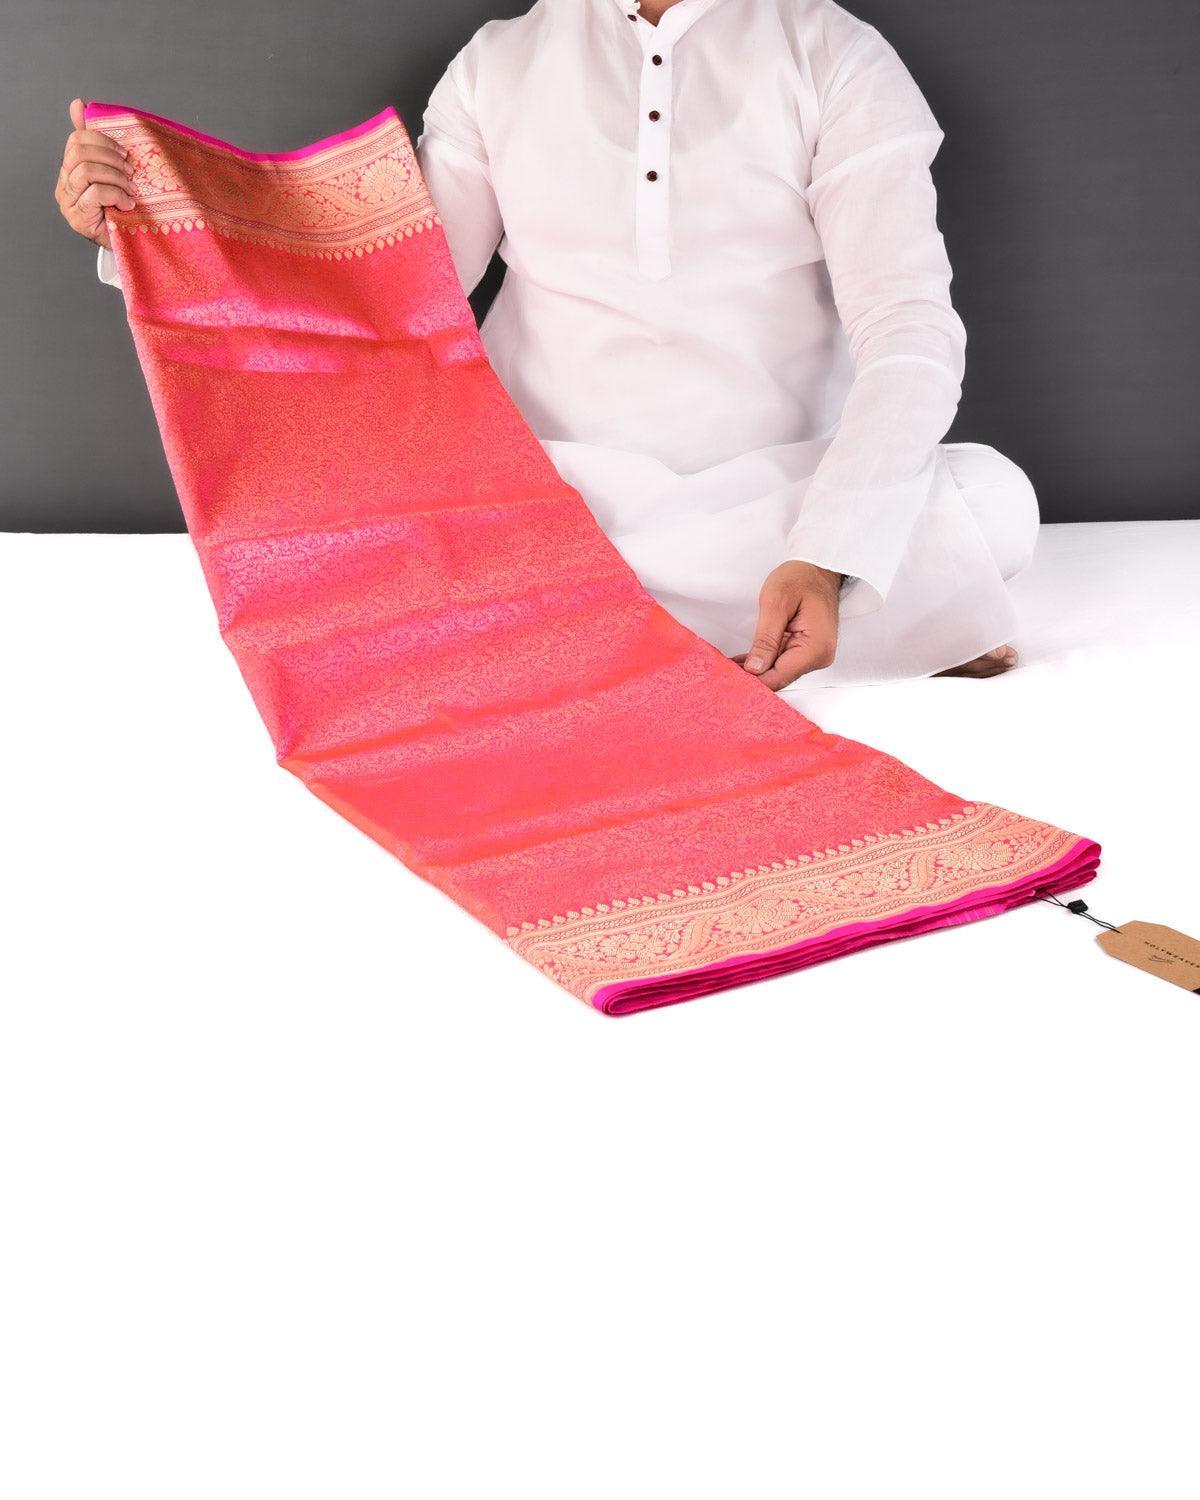 Pink Banarasi Maheen Jaal Gold Zari Brocade Handwoven Katan Silk Saree - By HolyWeaves, Benares